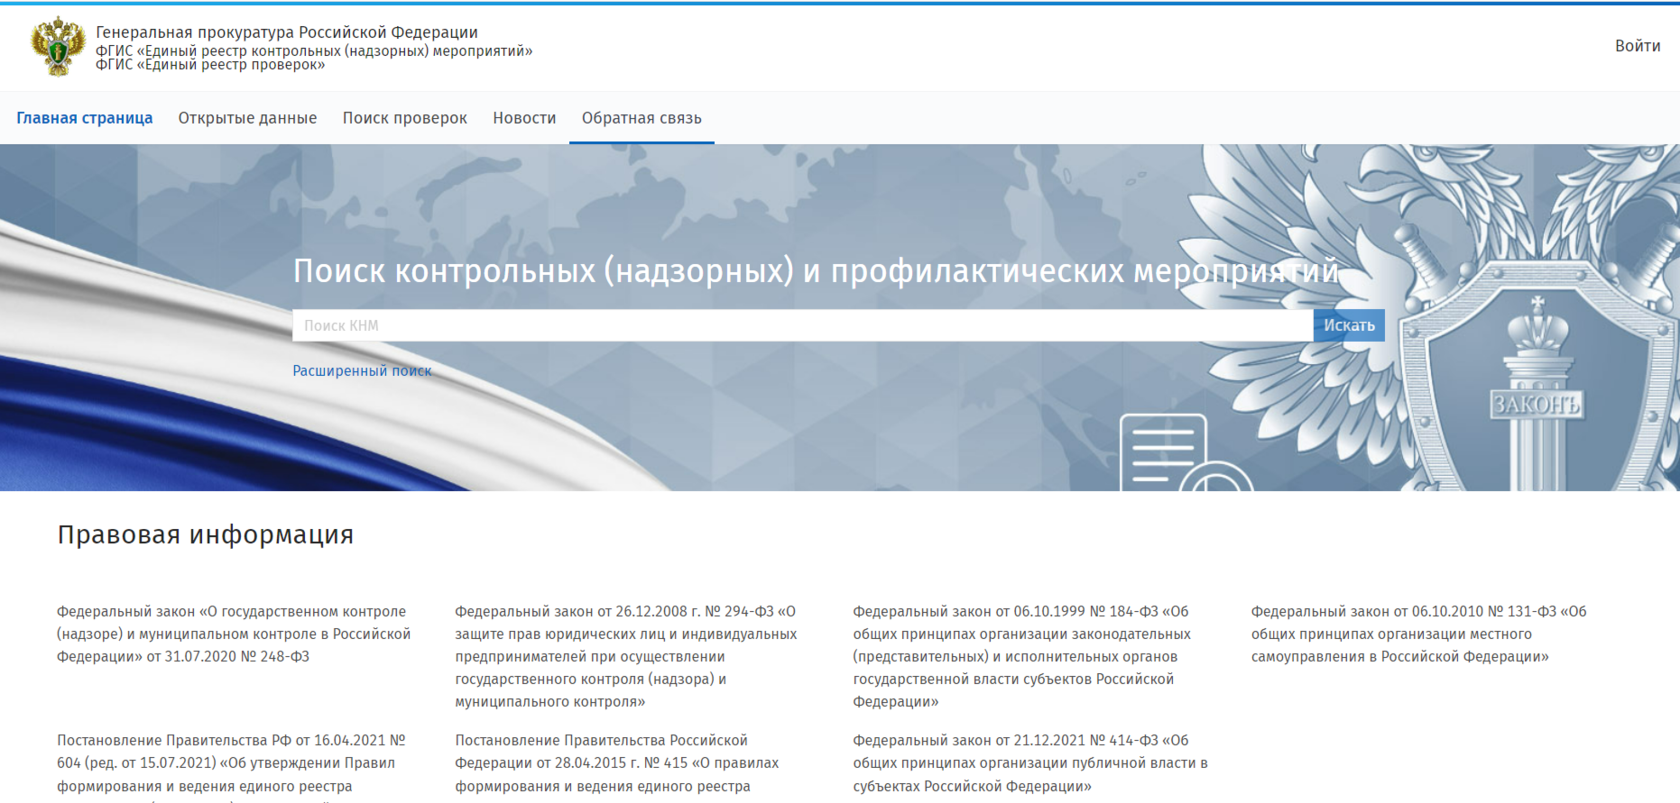 Реестр федеральной налоговой службы российской федерации